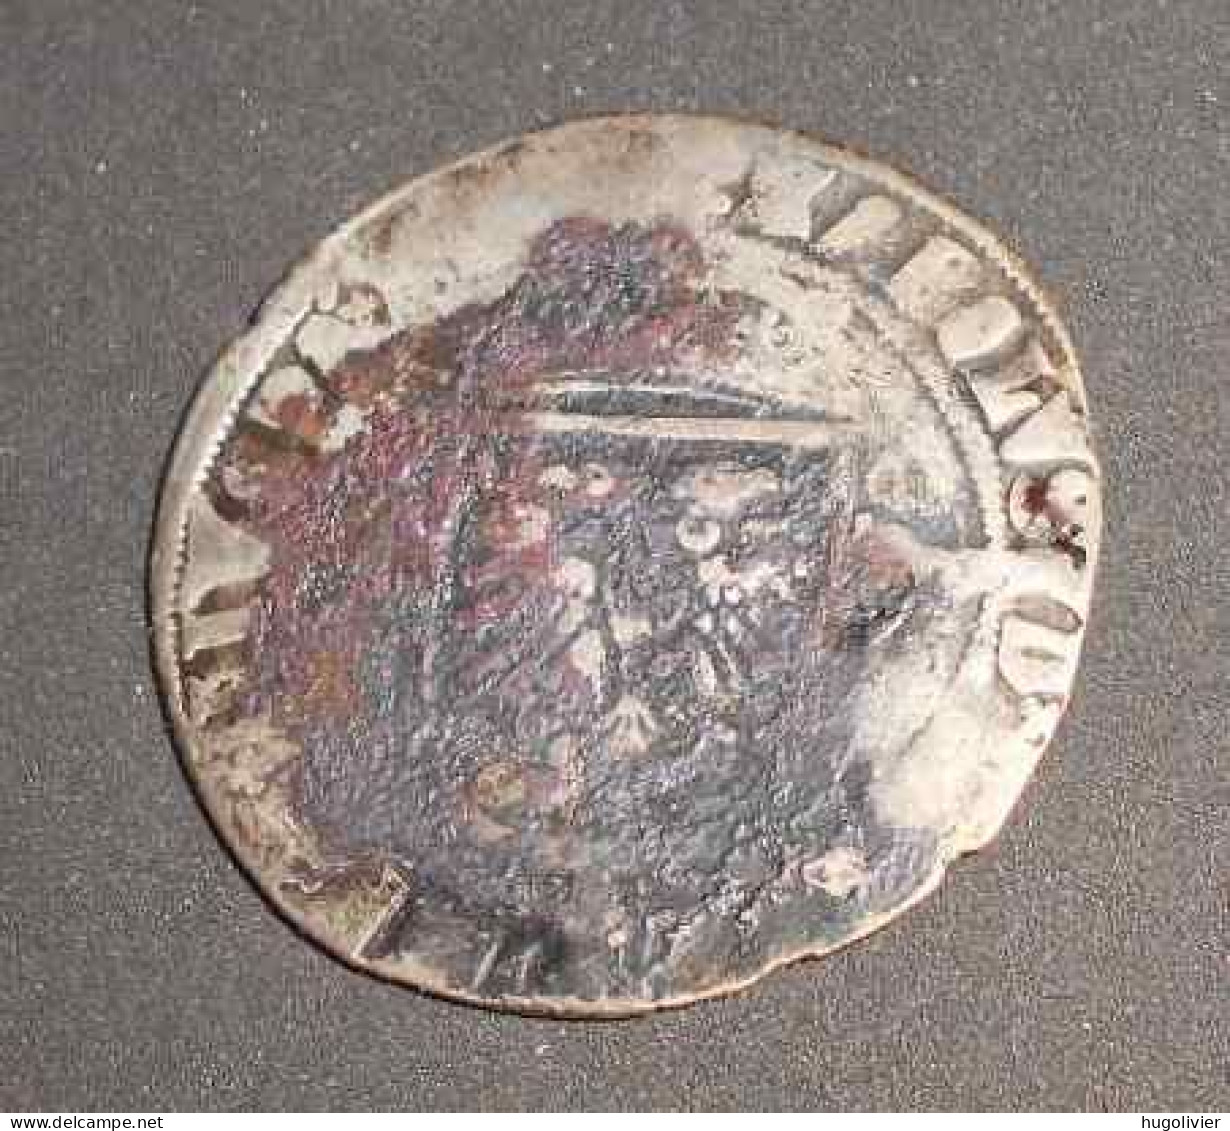 Ancienne Monnaie Sans Date 1/2 Réal D'argent Charles Quint Karolus 1506 -1520 - 1556-1713 Spaanse Nederlanden